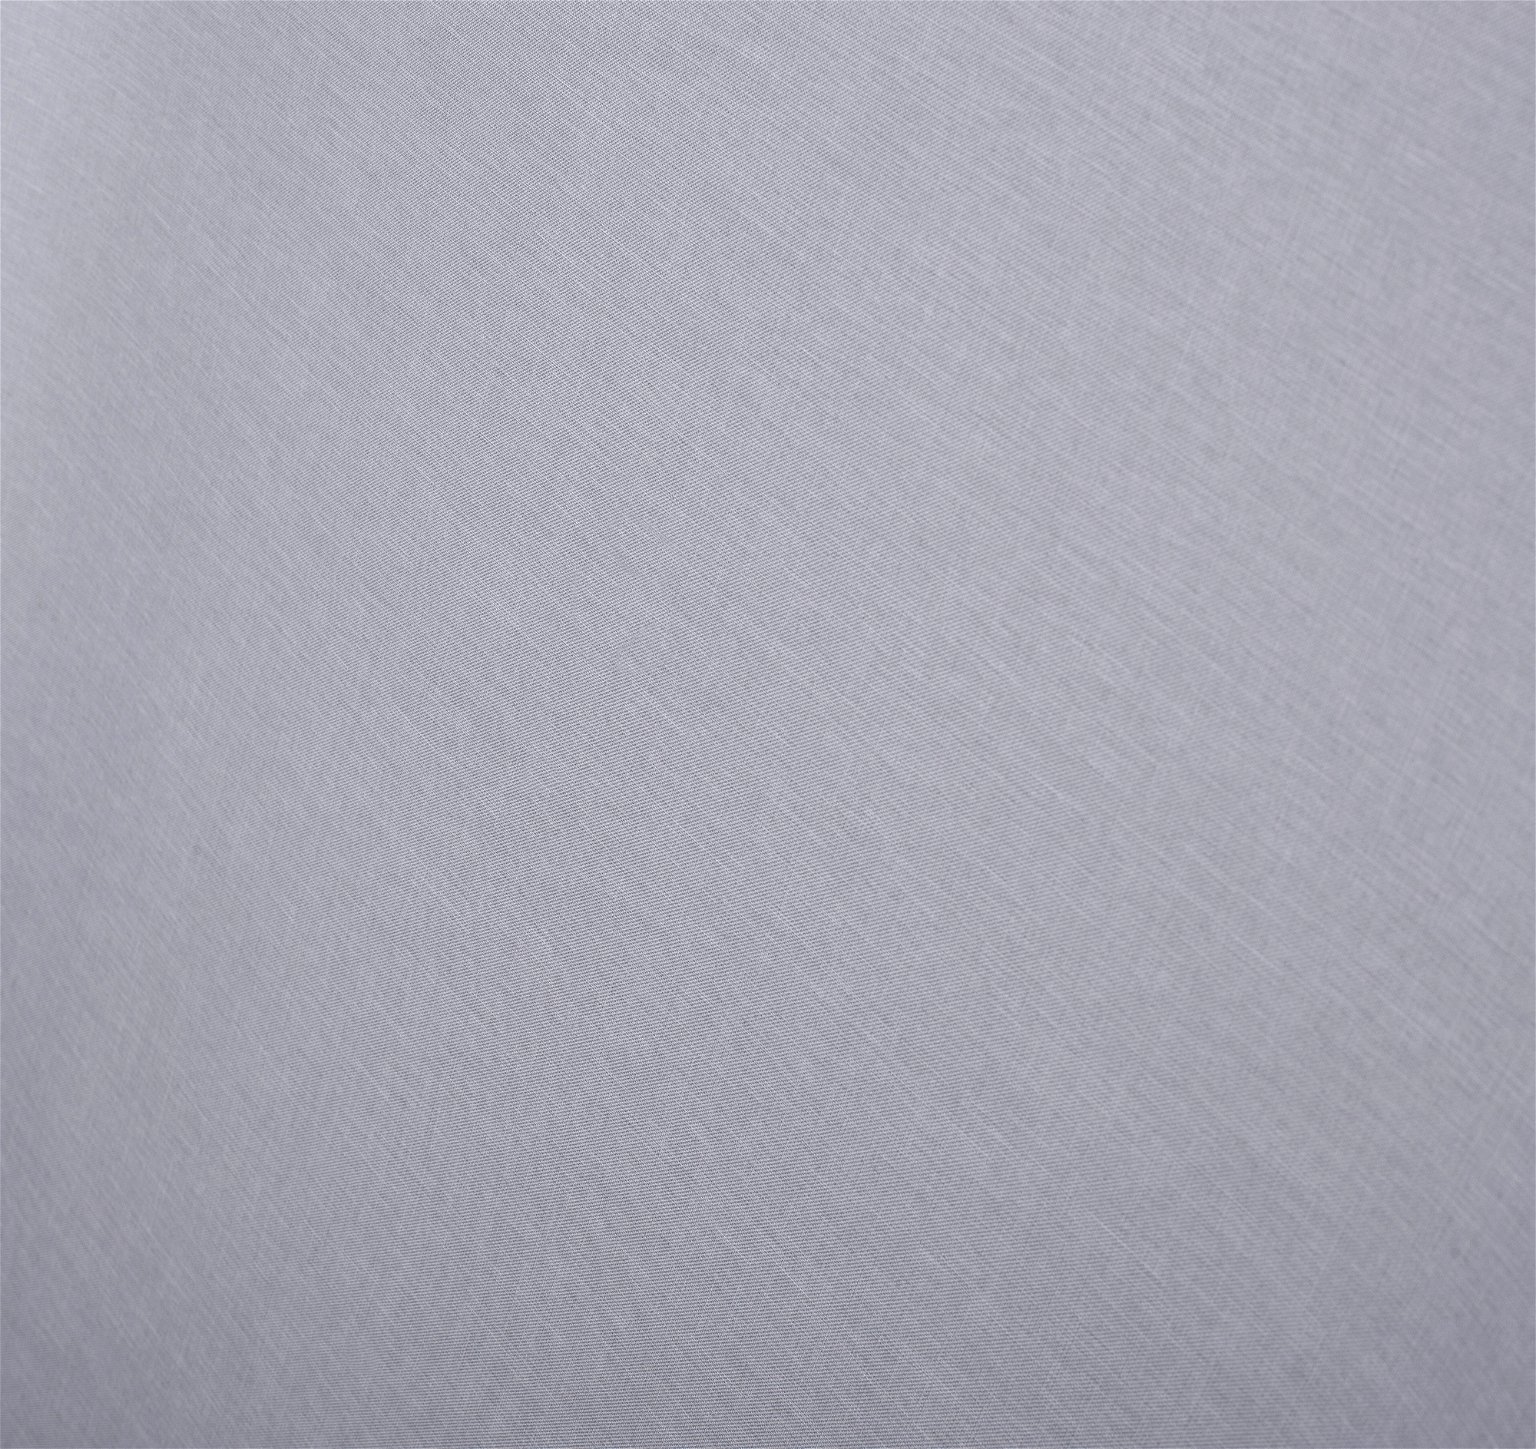 Klasikinė ritininė užuolaida MILAN, šv. pilkos sp., 180 x 170 cm, 100 % poliesteris - 4